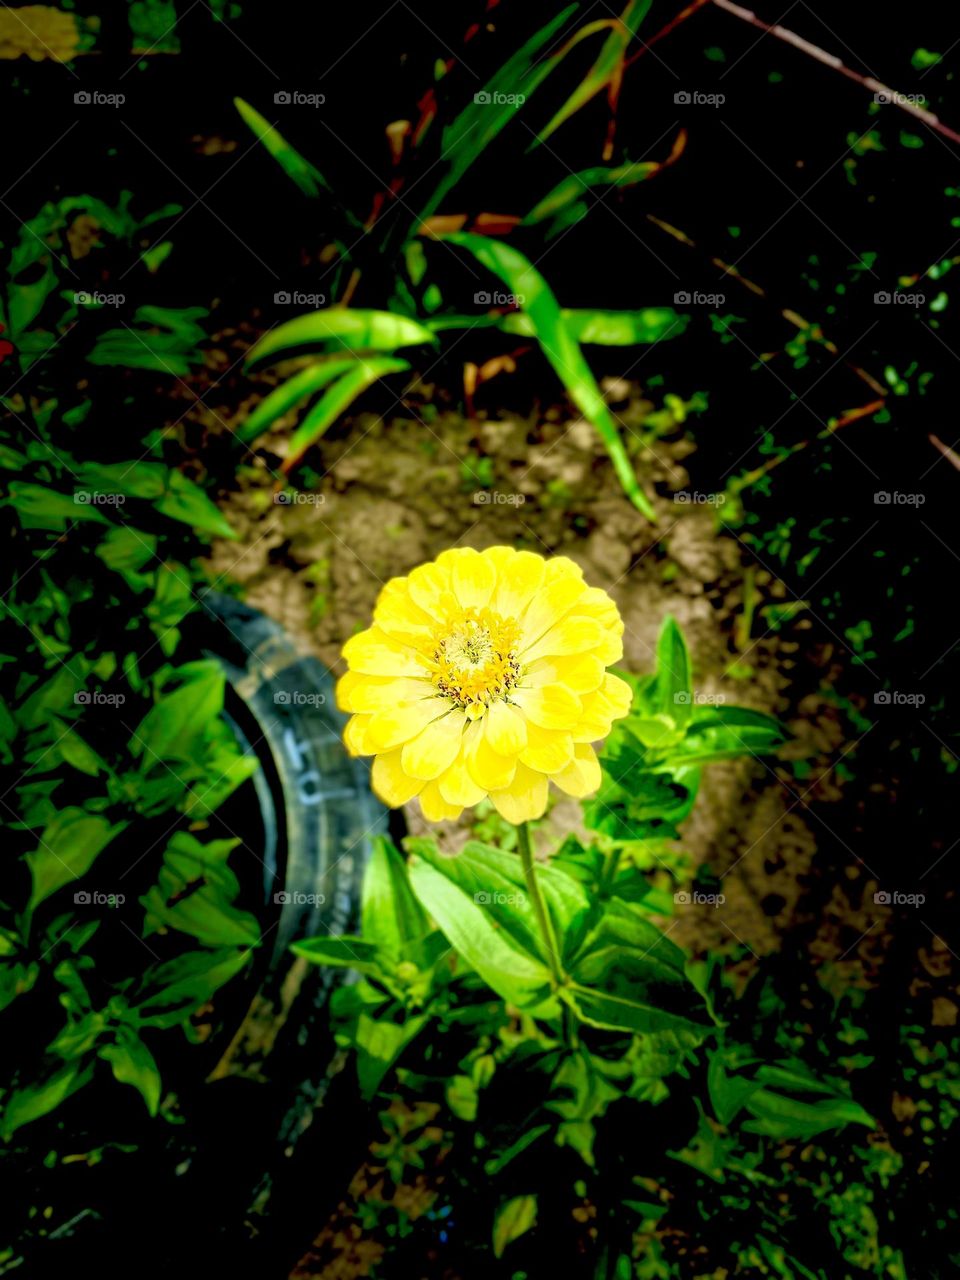 Yellows Flower in my garden 🪴